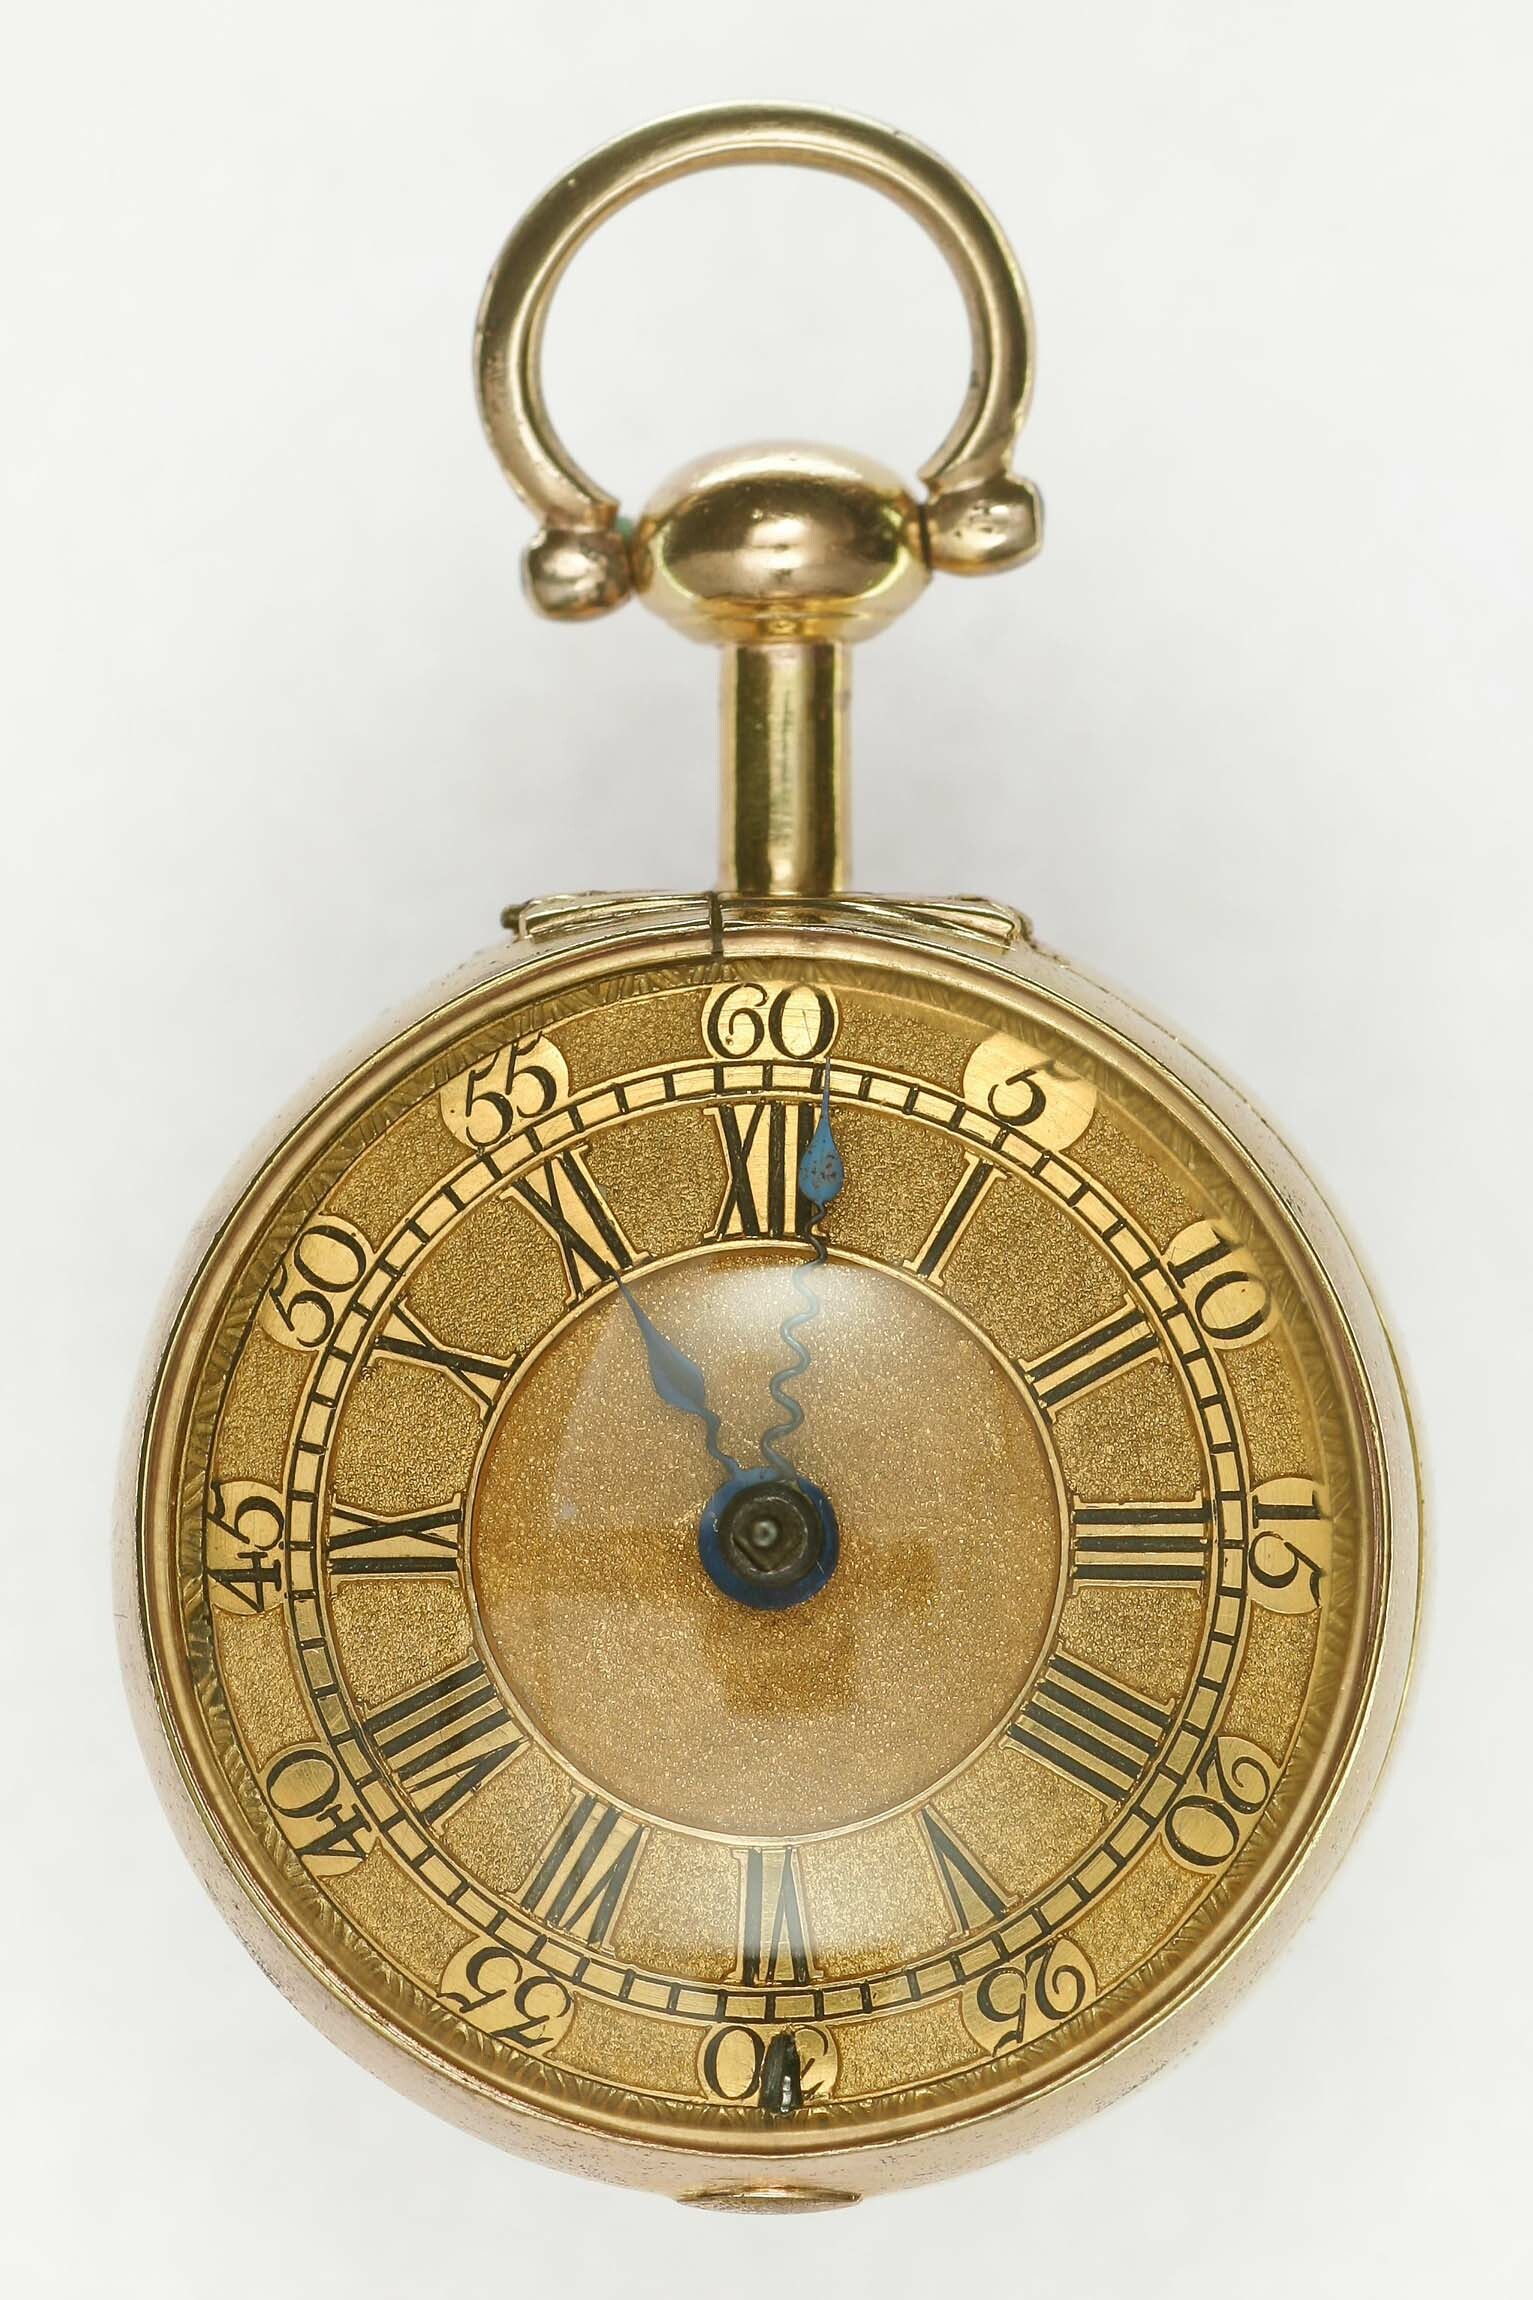 Taschenuhr, Wm. Post, London, um 1750 (Deutsches Uhrenmuseum CC BY-SA)